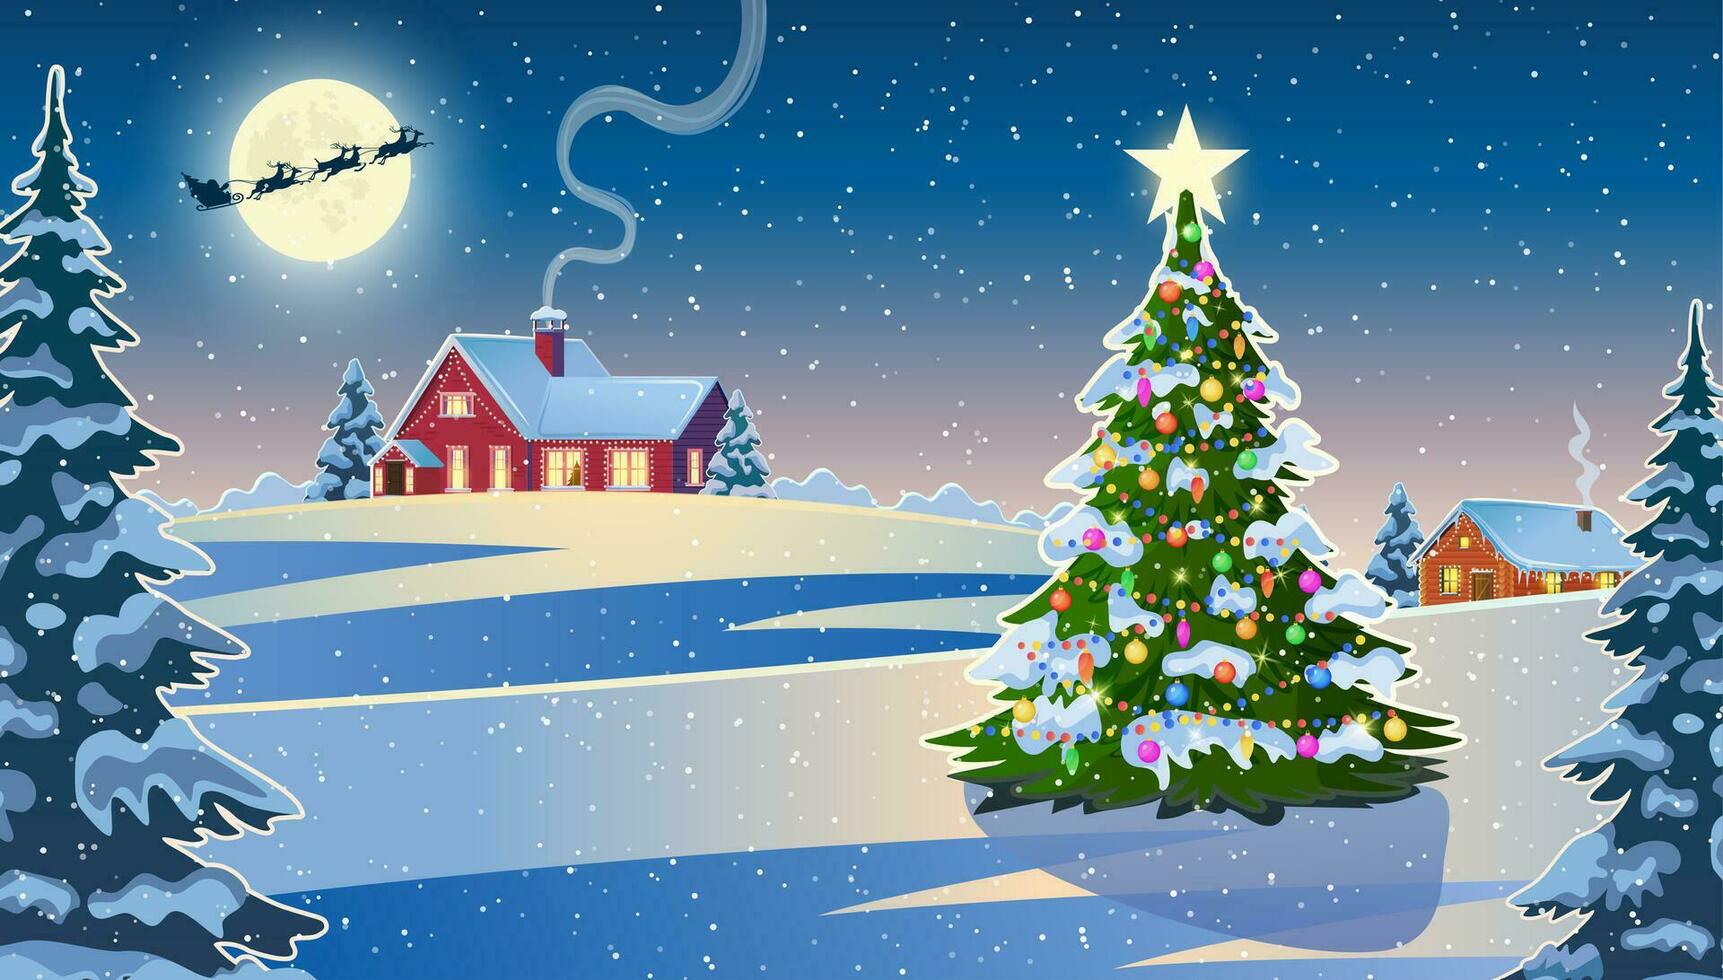 invierno nieve paisaje y casas con Navidad árbol. concepto para saludo o postal tarjeta. antecedentes con Luna y el silueta de Papa Noel claus volador en un trineo. vector ilustración.